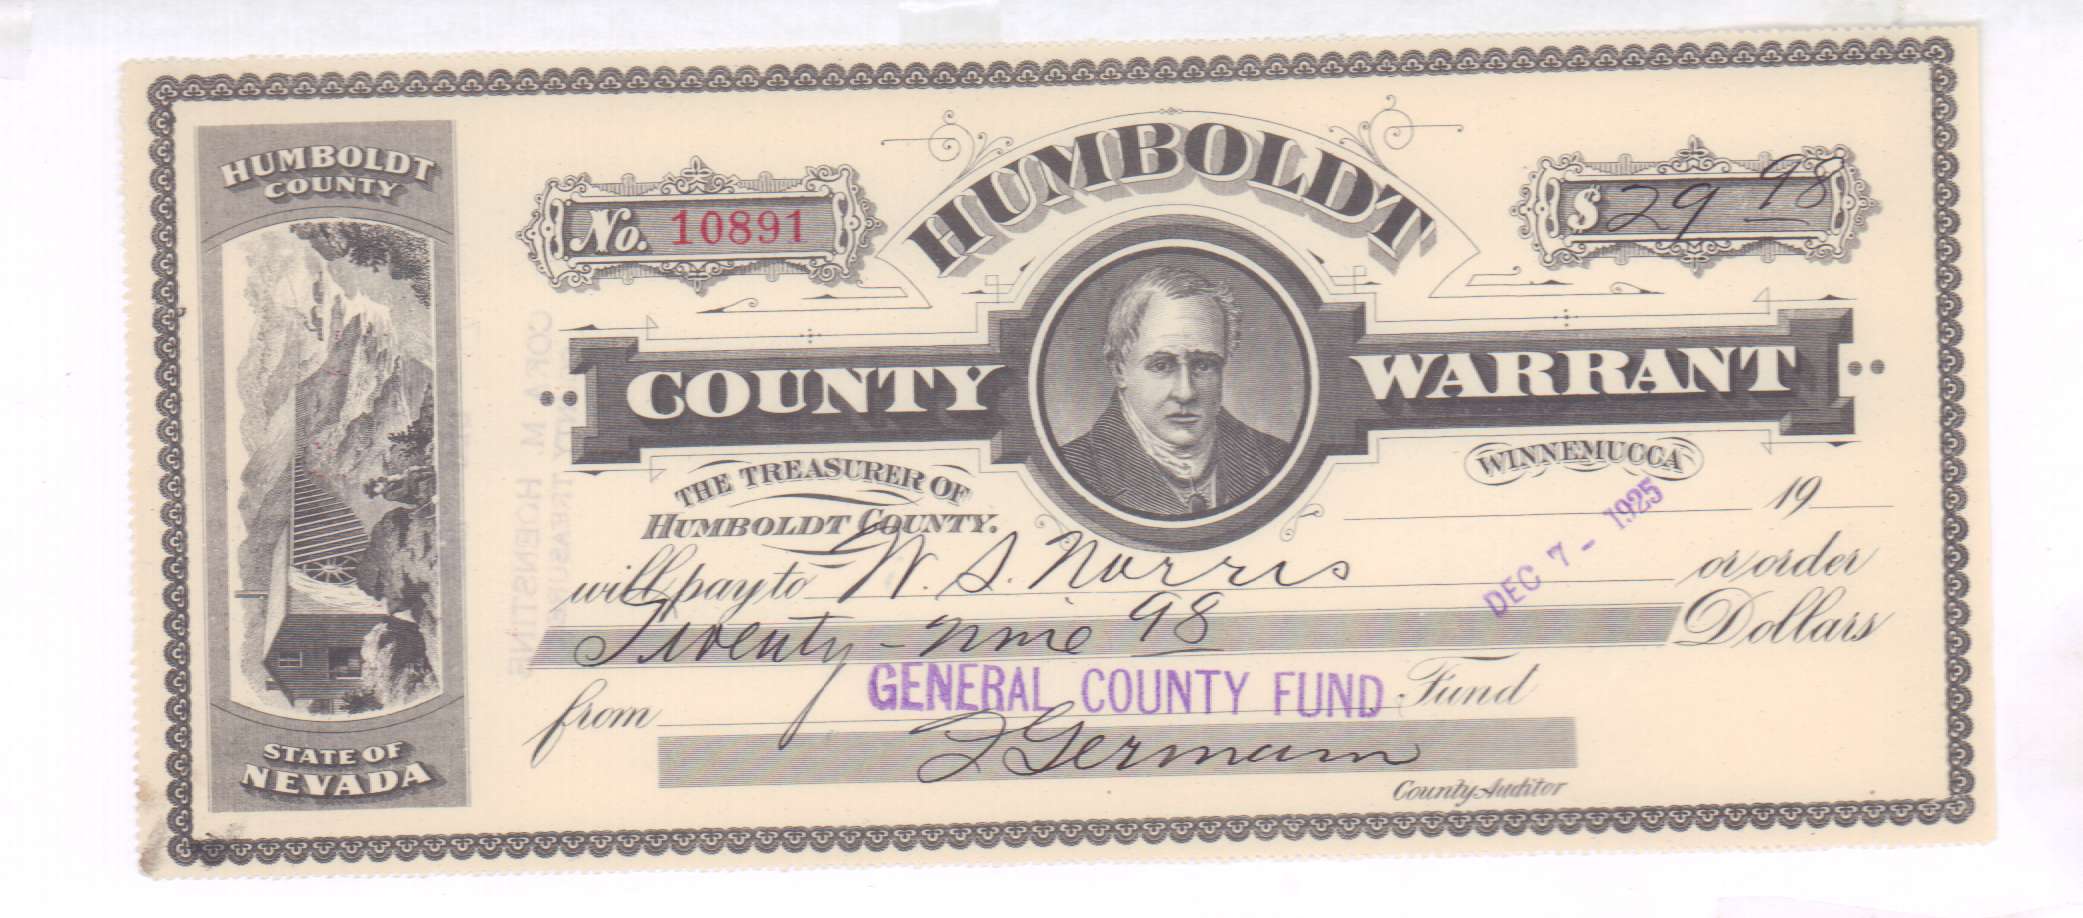 Чеки в иностранной валюте. Варрант это ценная бумага. Humboldt County. Банковские чеки в Америке. Варрант ценная бумага картинки.